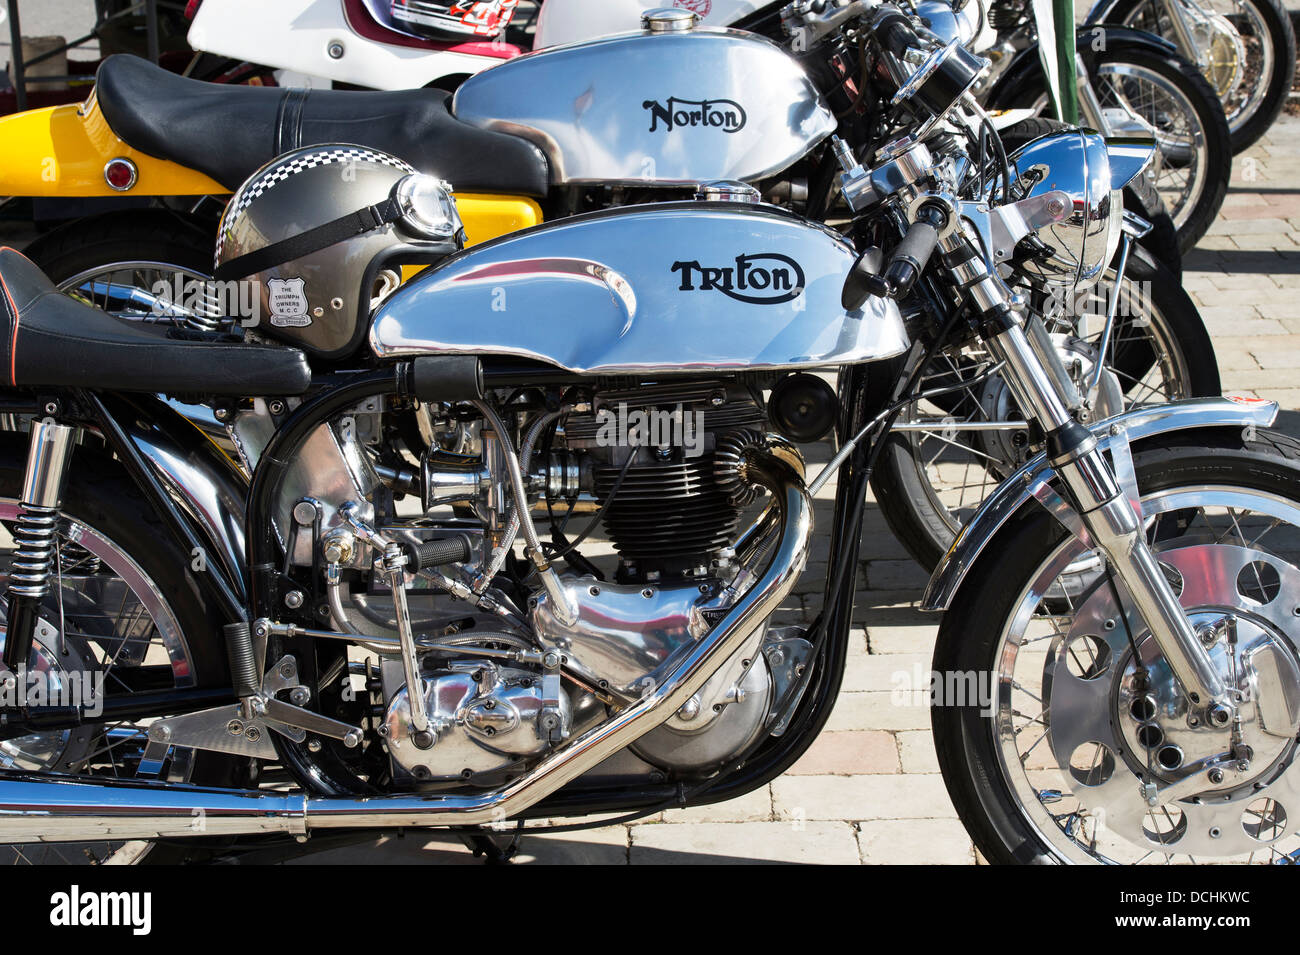 Triton café racer moto. Triumph/Norton moto. Moto classique britannique  Photo Stock - Alamy